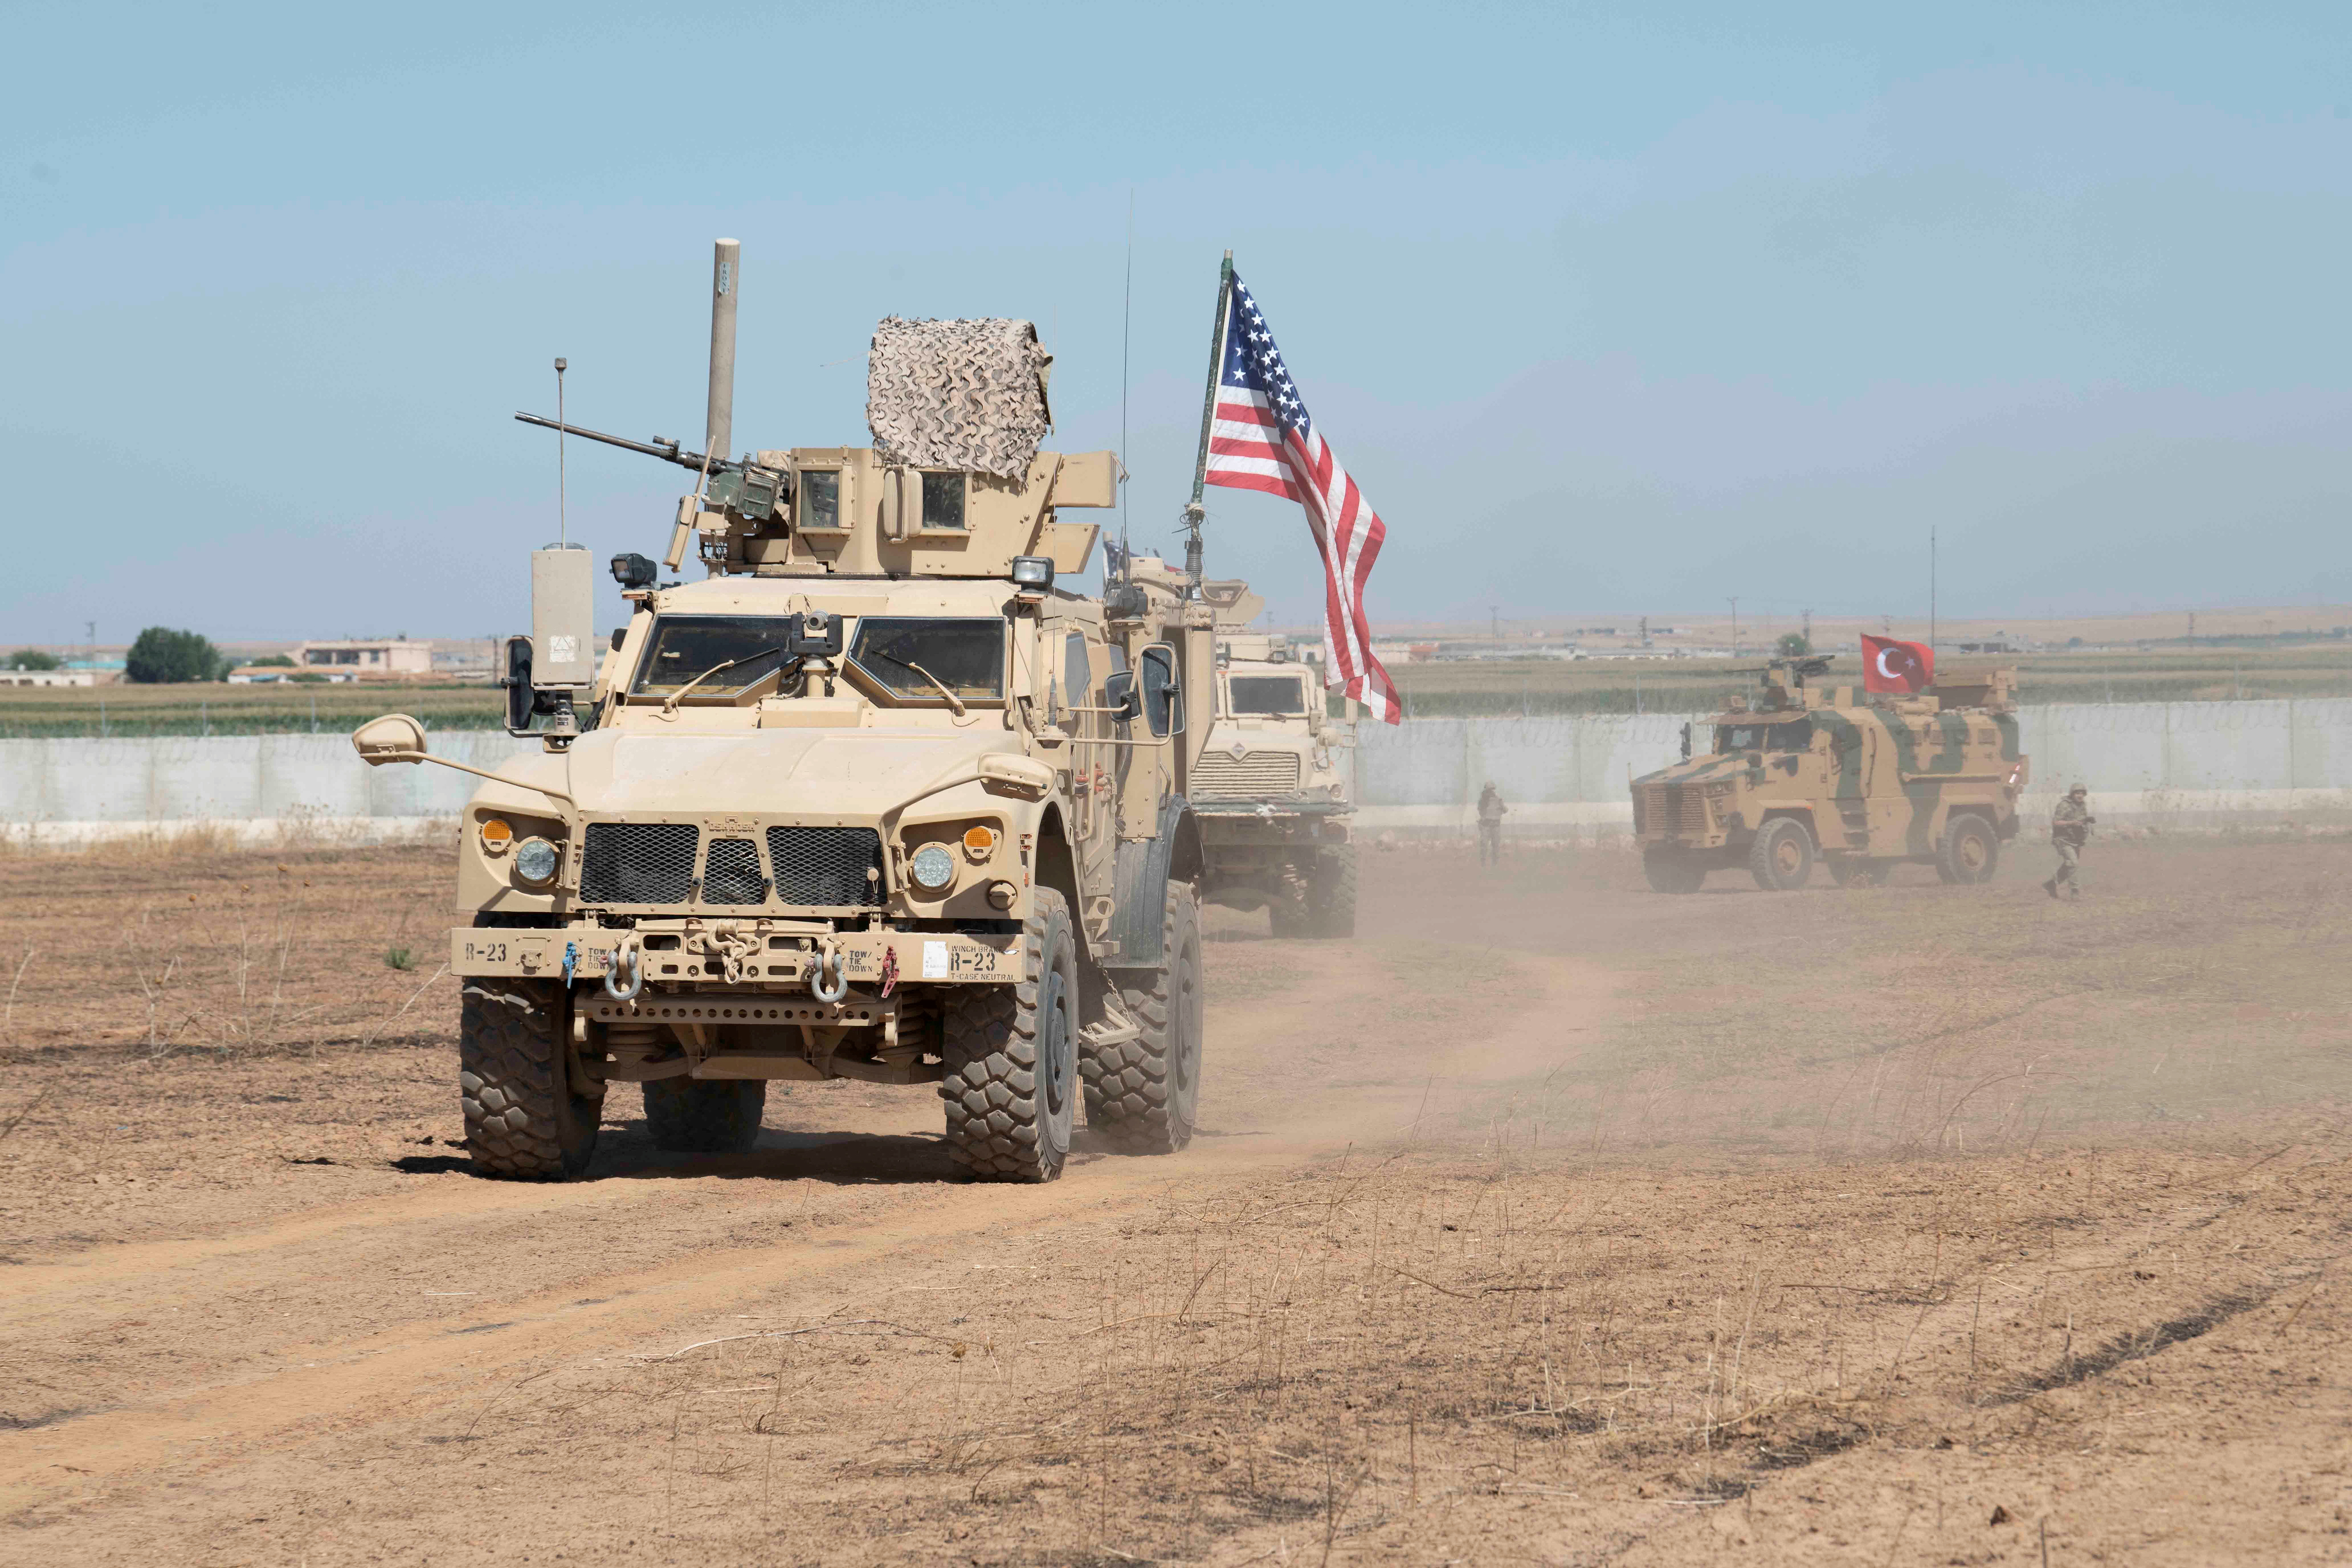 Αποσύρθηκαν οι αμερικανικές δυνάμεις από στρατιωτική βάση στη βόρεια Συρία